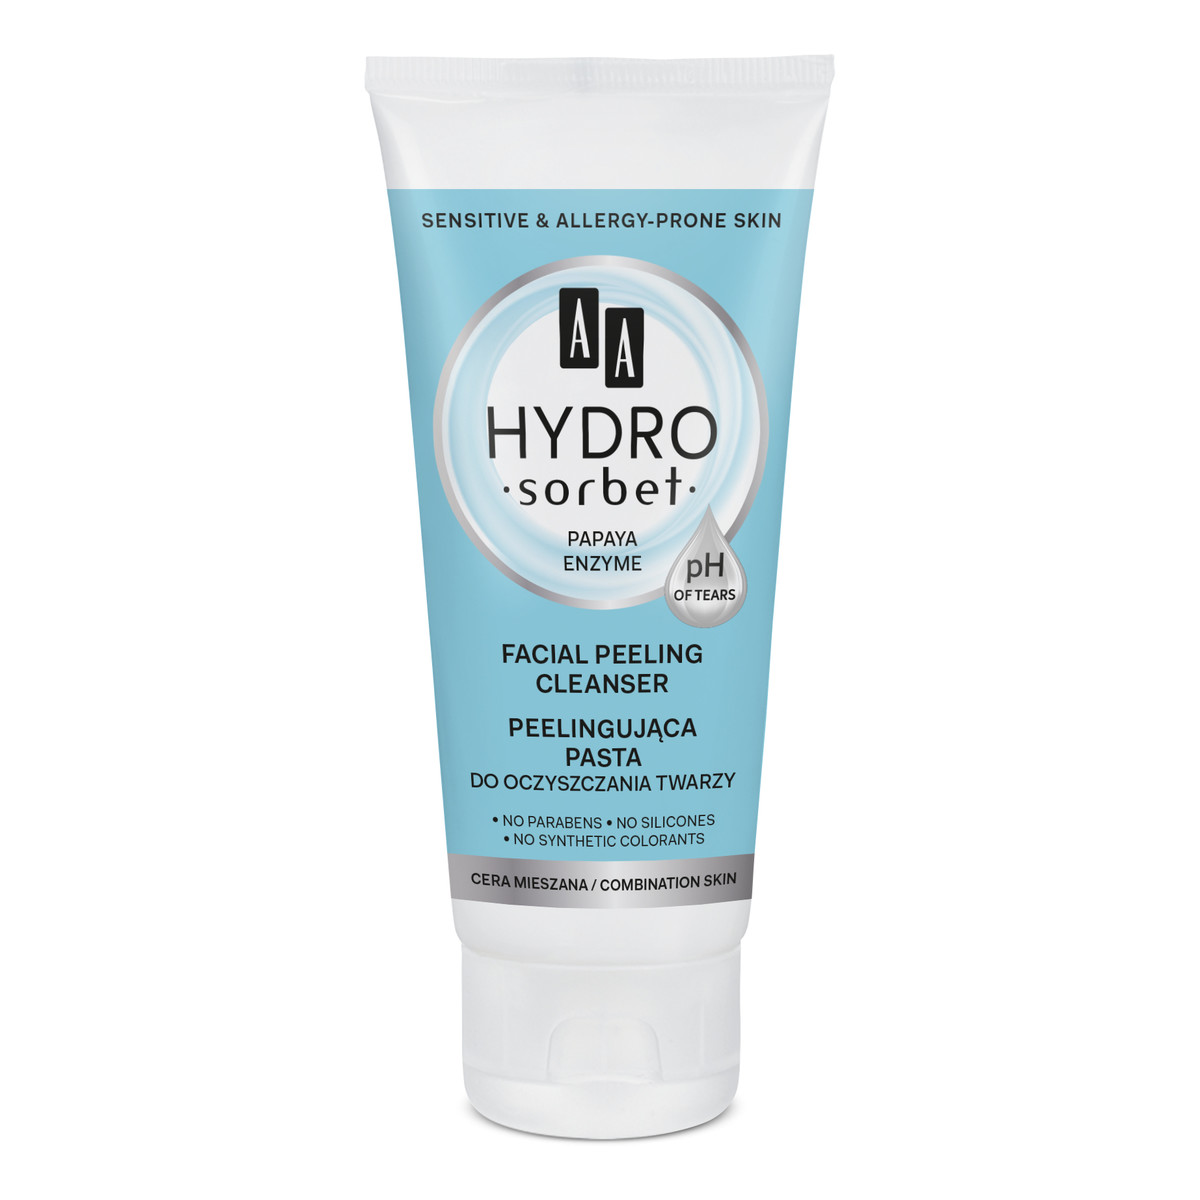 AA Hydro Sorbet pasta peelingująca do oczyszczania twarzy 50ml